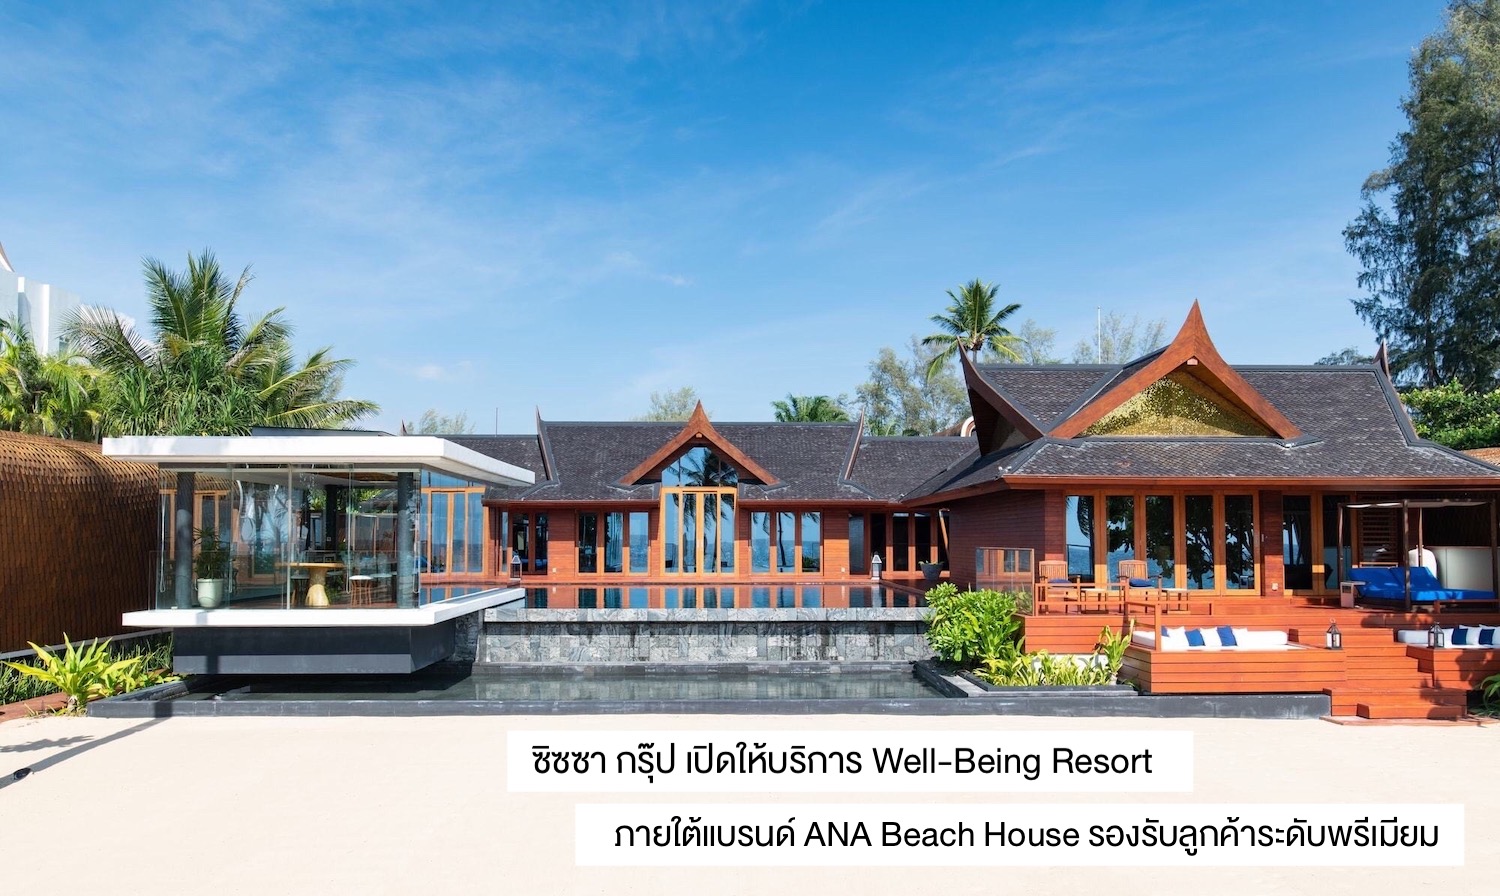 ซิซซา กรุ๊ป เปิดให้บริการ Well-Being Resort ภายใต้แบรนด์ ANA Beach House รองรับลูกค้าระดับพรีเมียม 